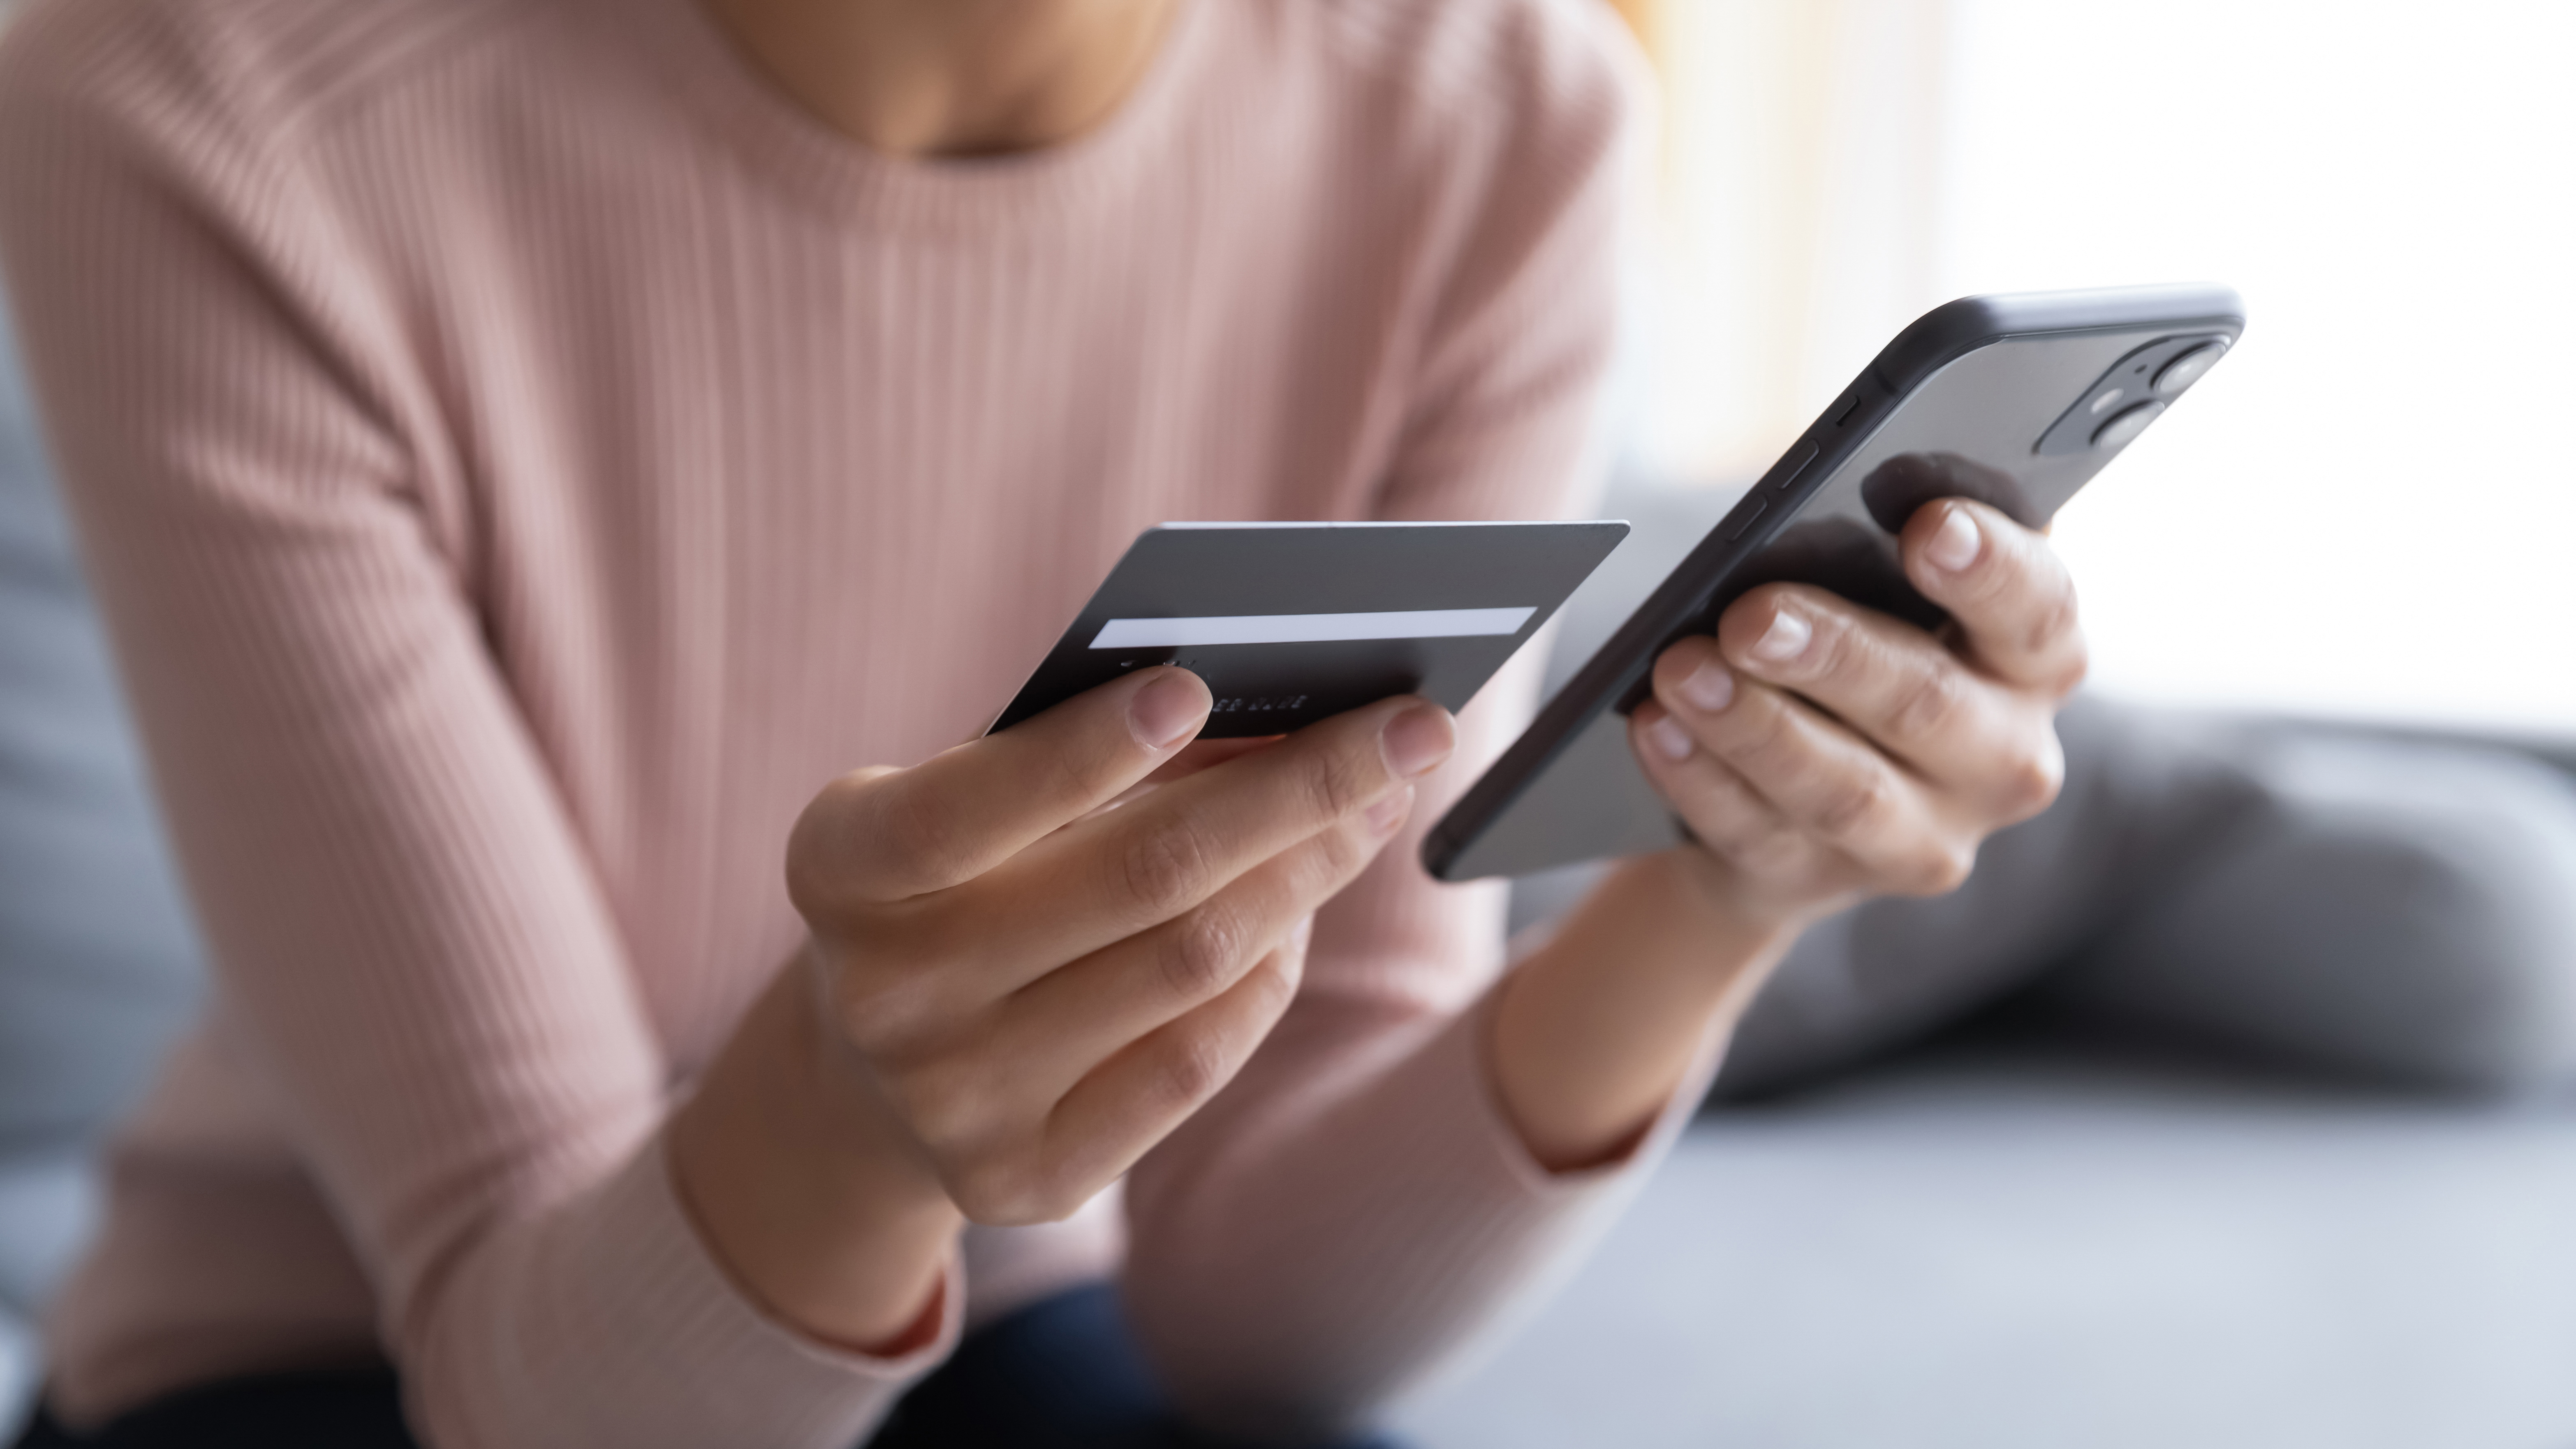 A woman making an online transaction | Source: Shutterstock